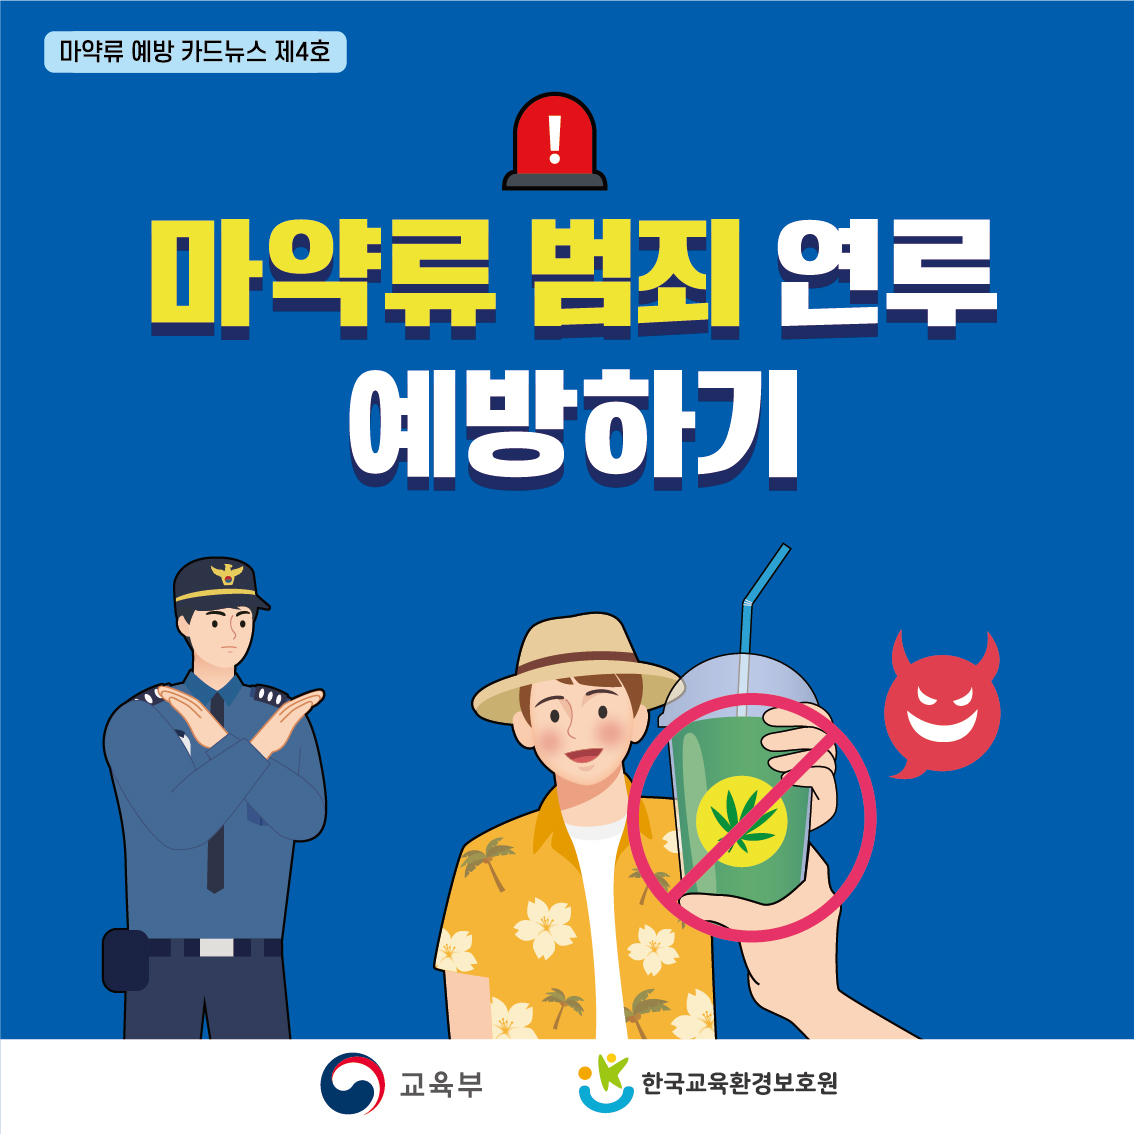 12월1주_마약류 예방 카드뉴스-4호1 (1)